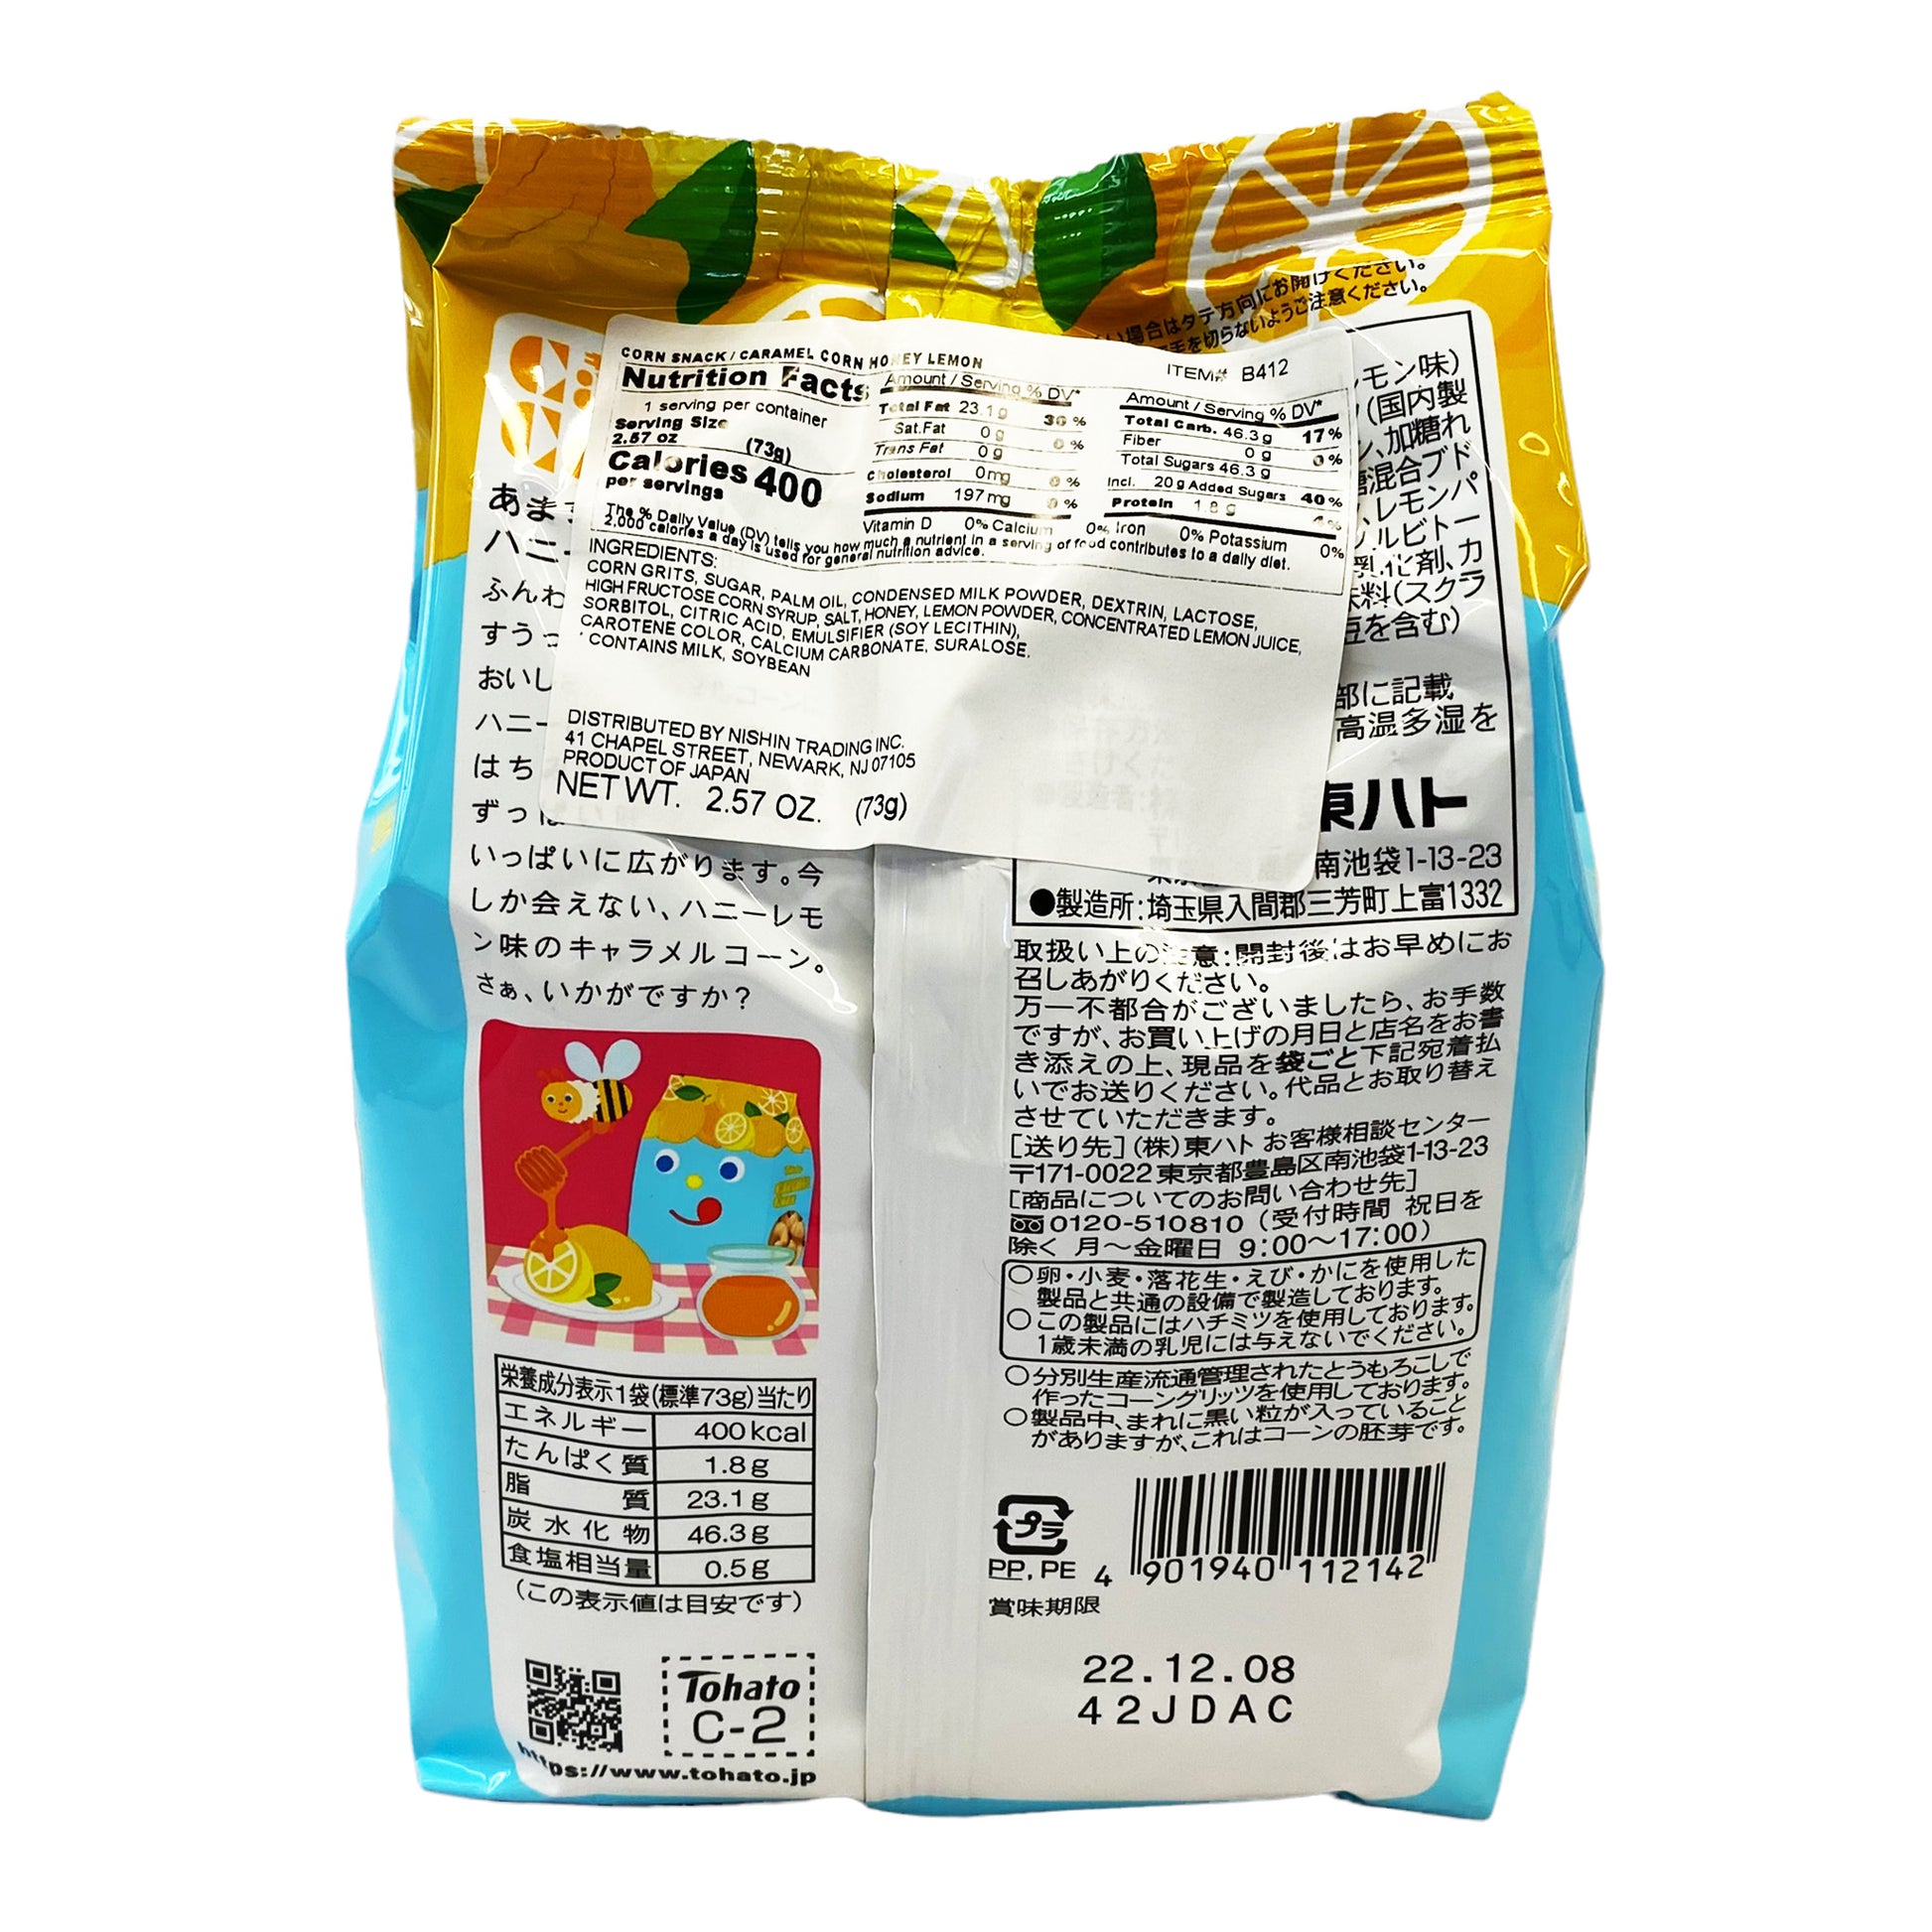 Back graphic image of Tohato Caramel Corn - Honey Lemon 2.57 oz (73g)